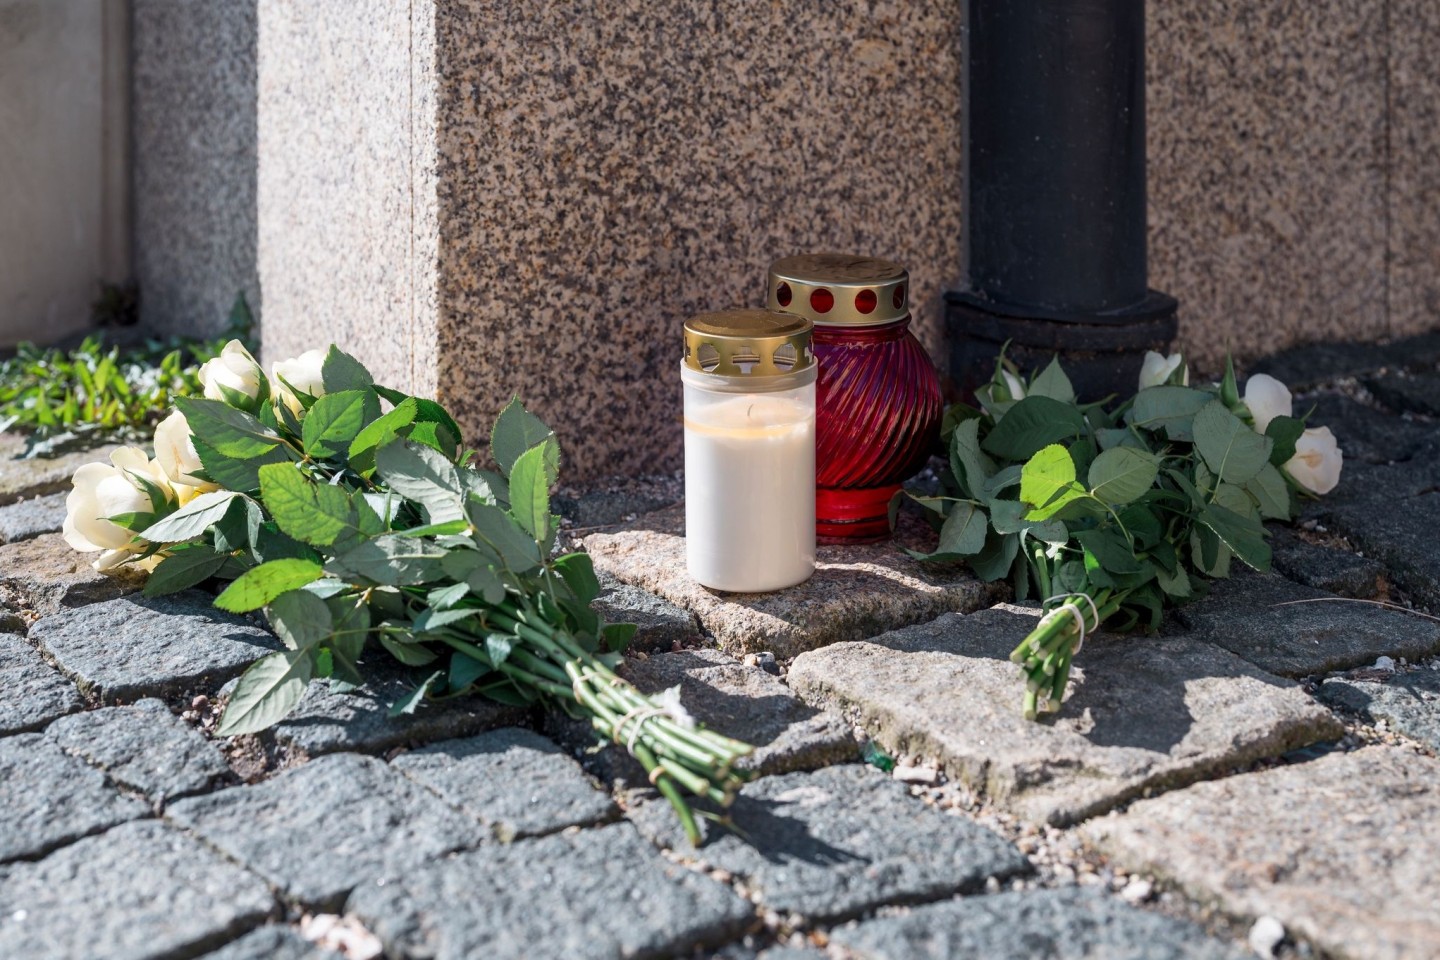 Blumen an der Zufahrtsstraße zum Kinder- und Jugendhilfezentrum in Wunsiedel, wo eine Zehnjährige tot aufgefunden wurde.